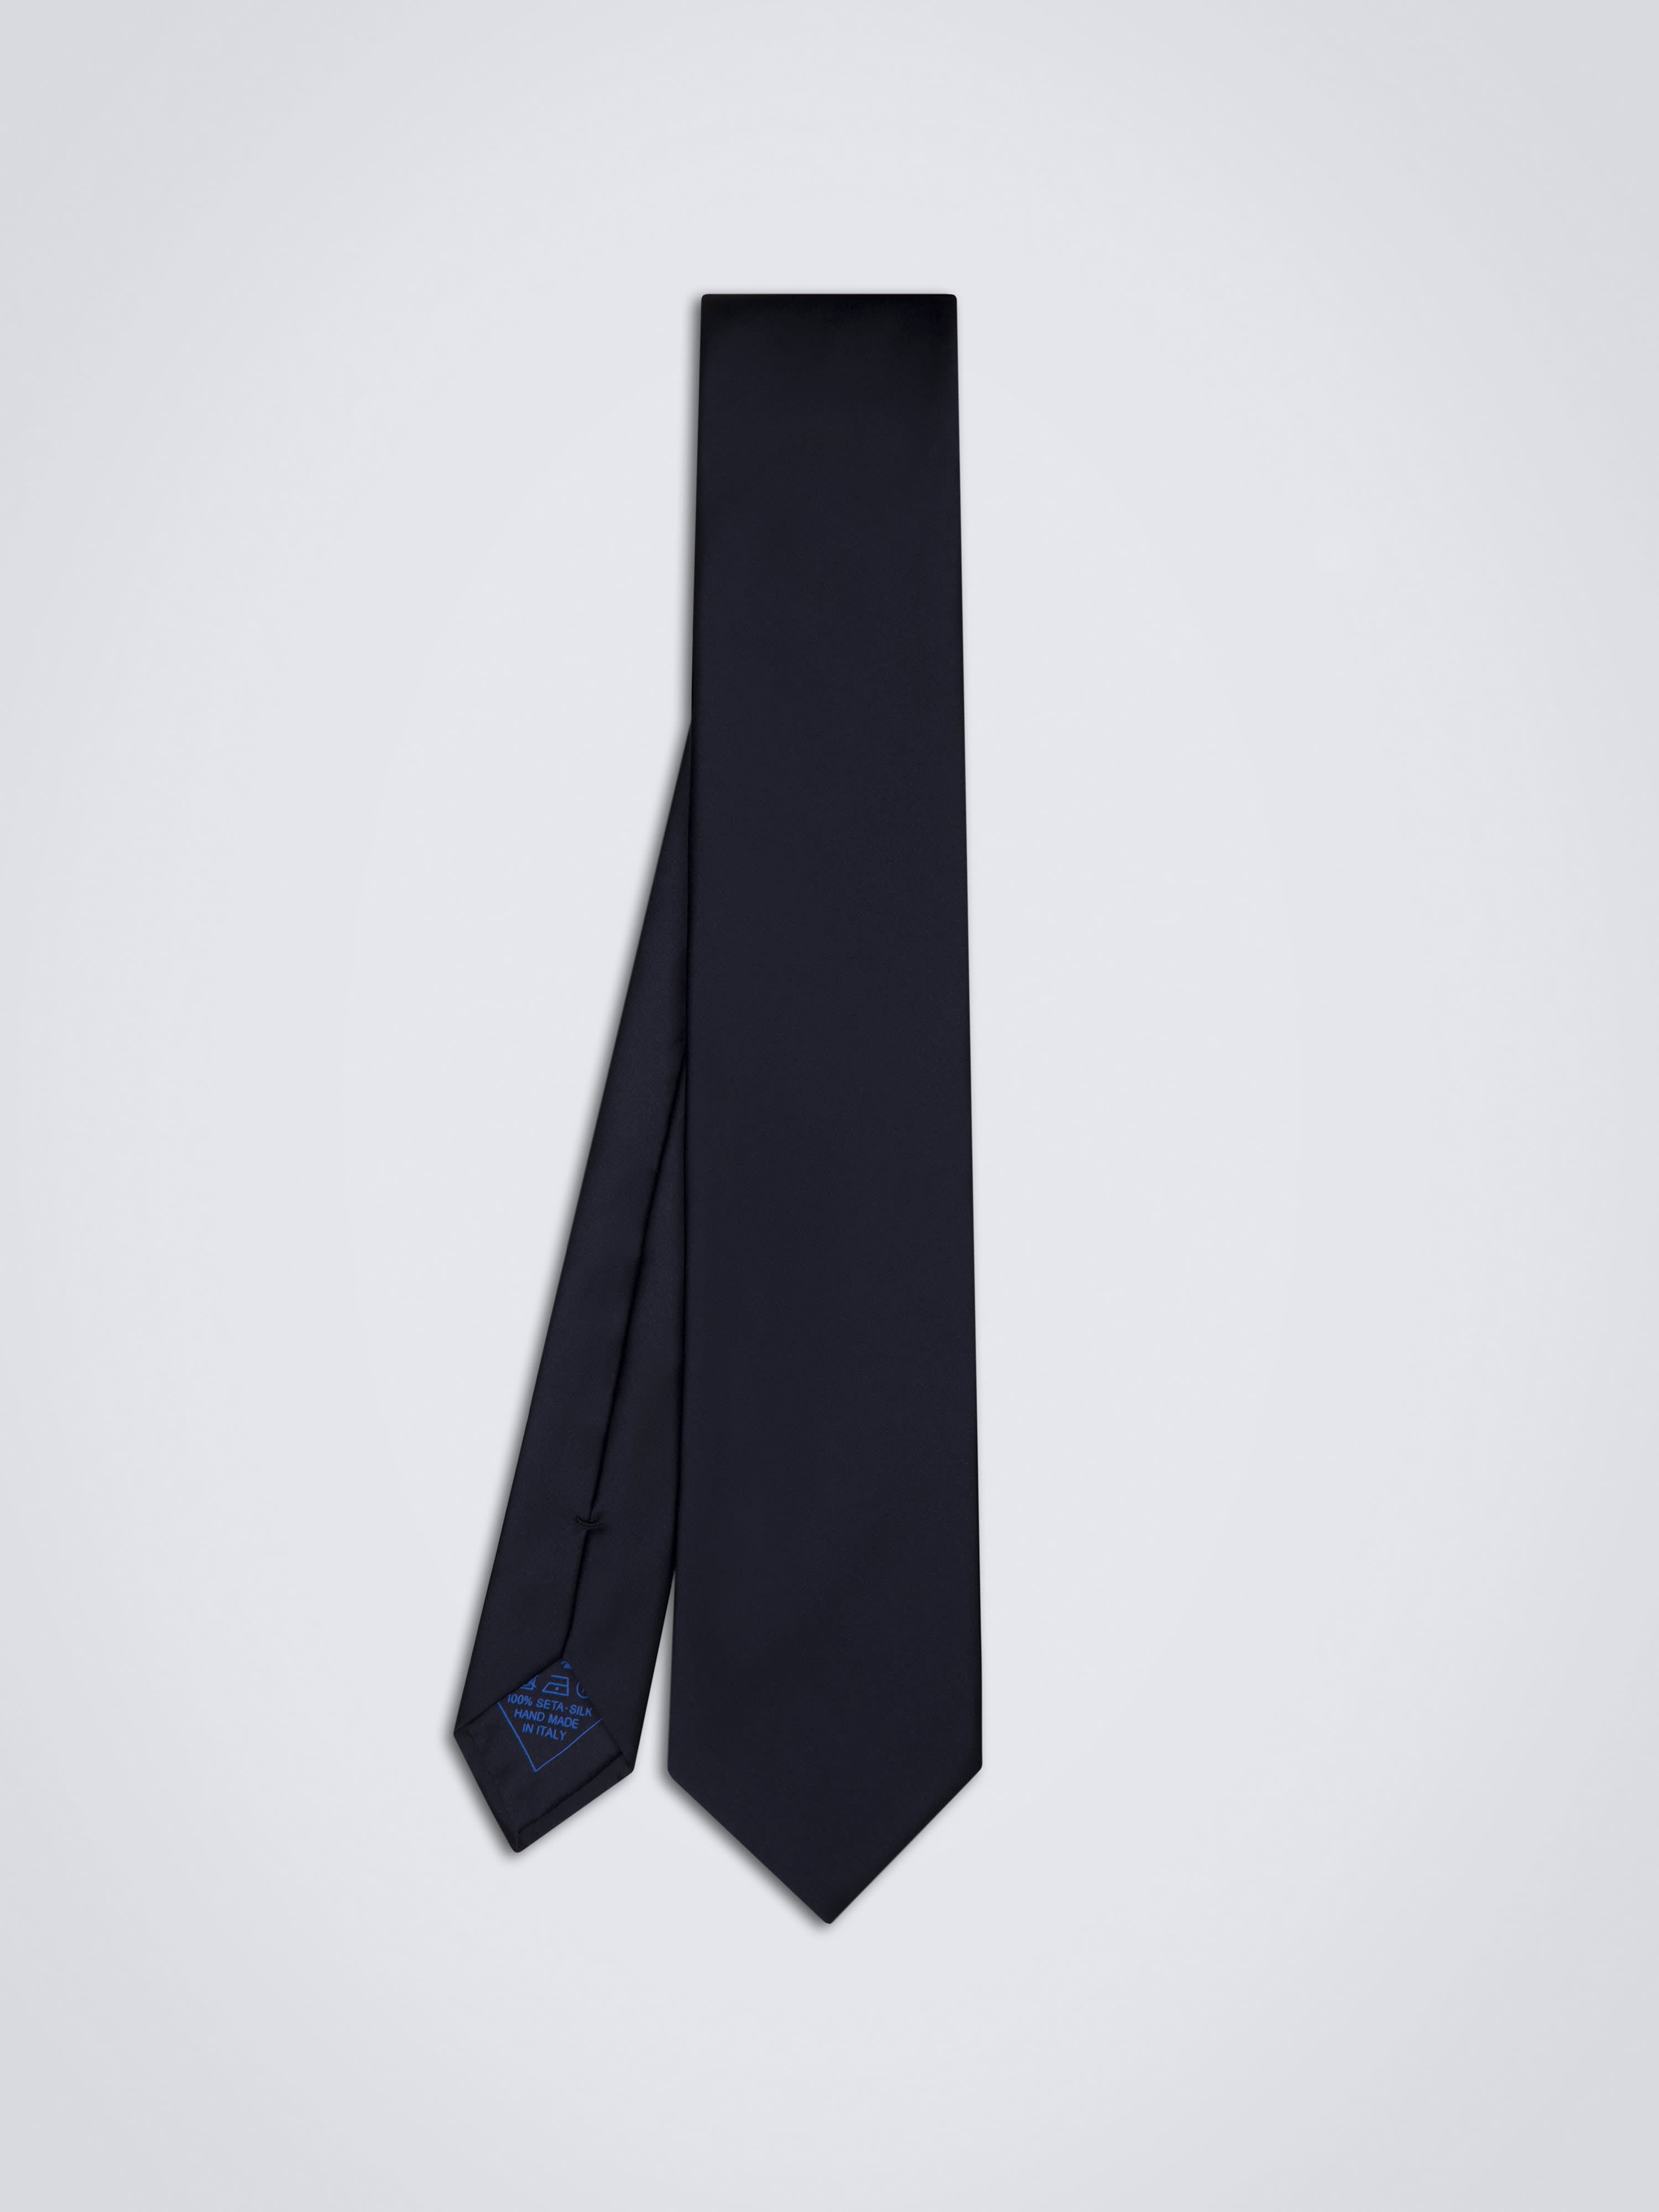 Brioni Navy Blue Silk Tie